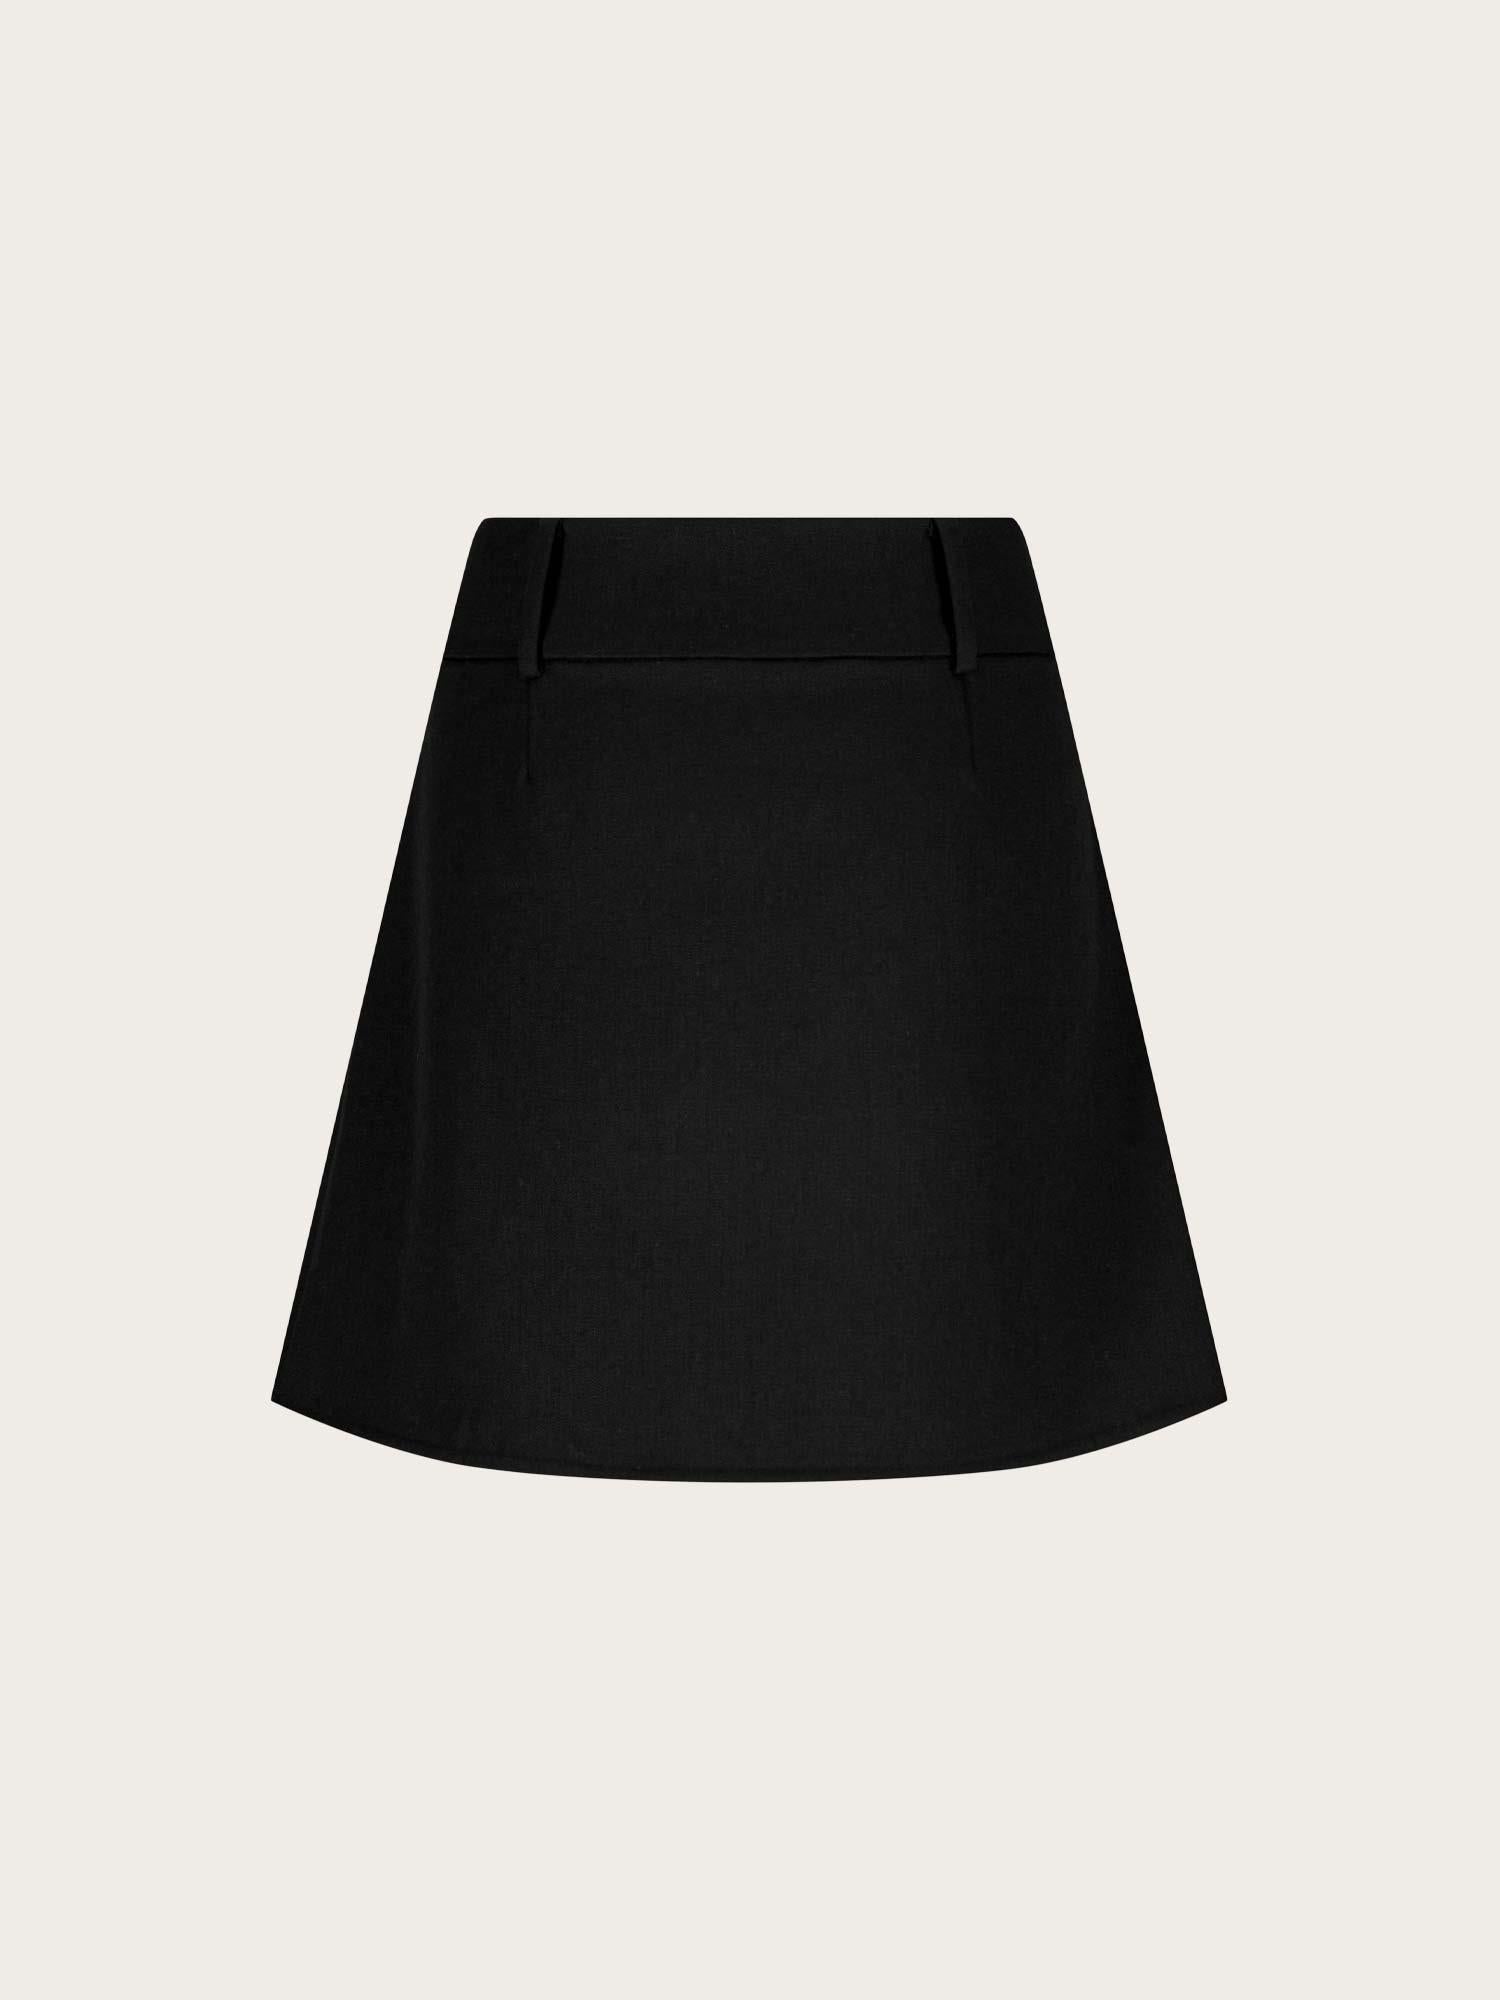 London Skirt - Black